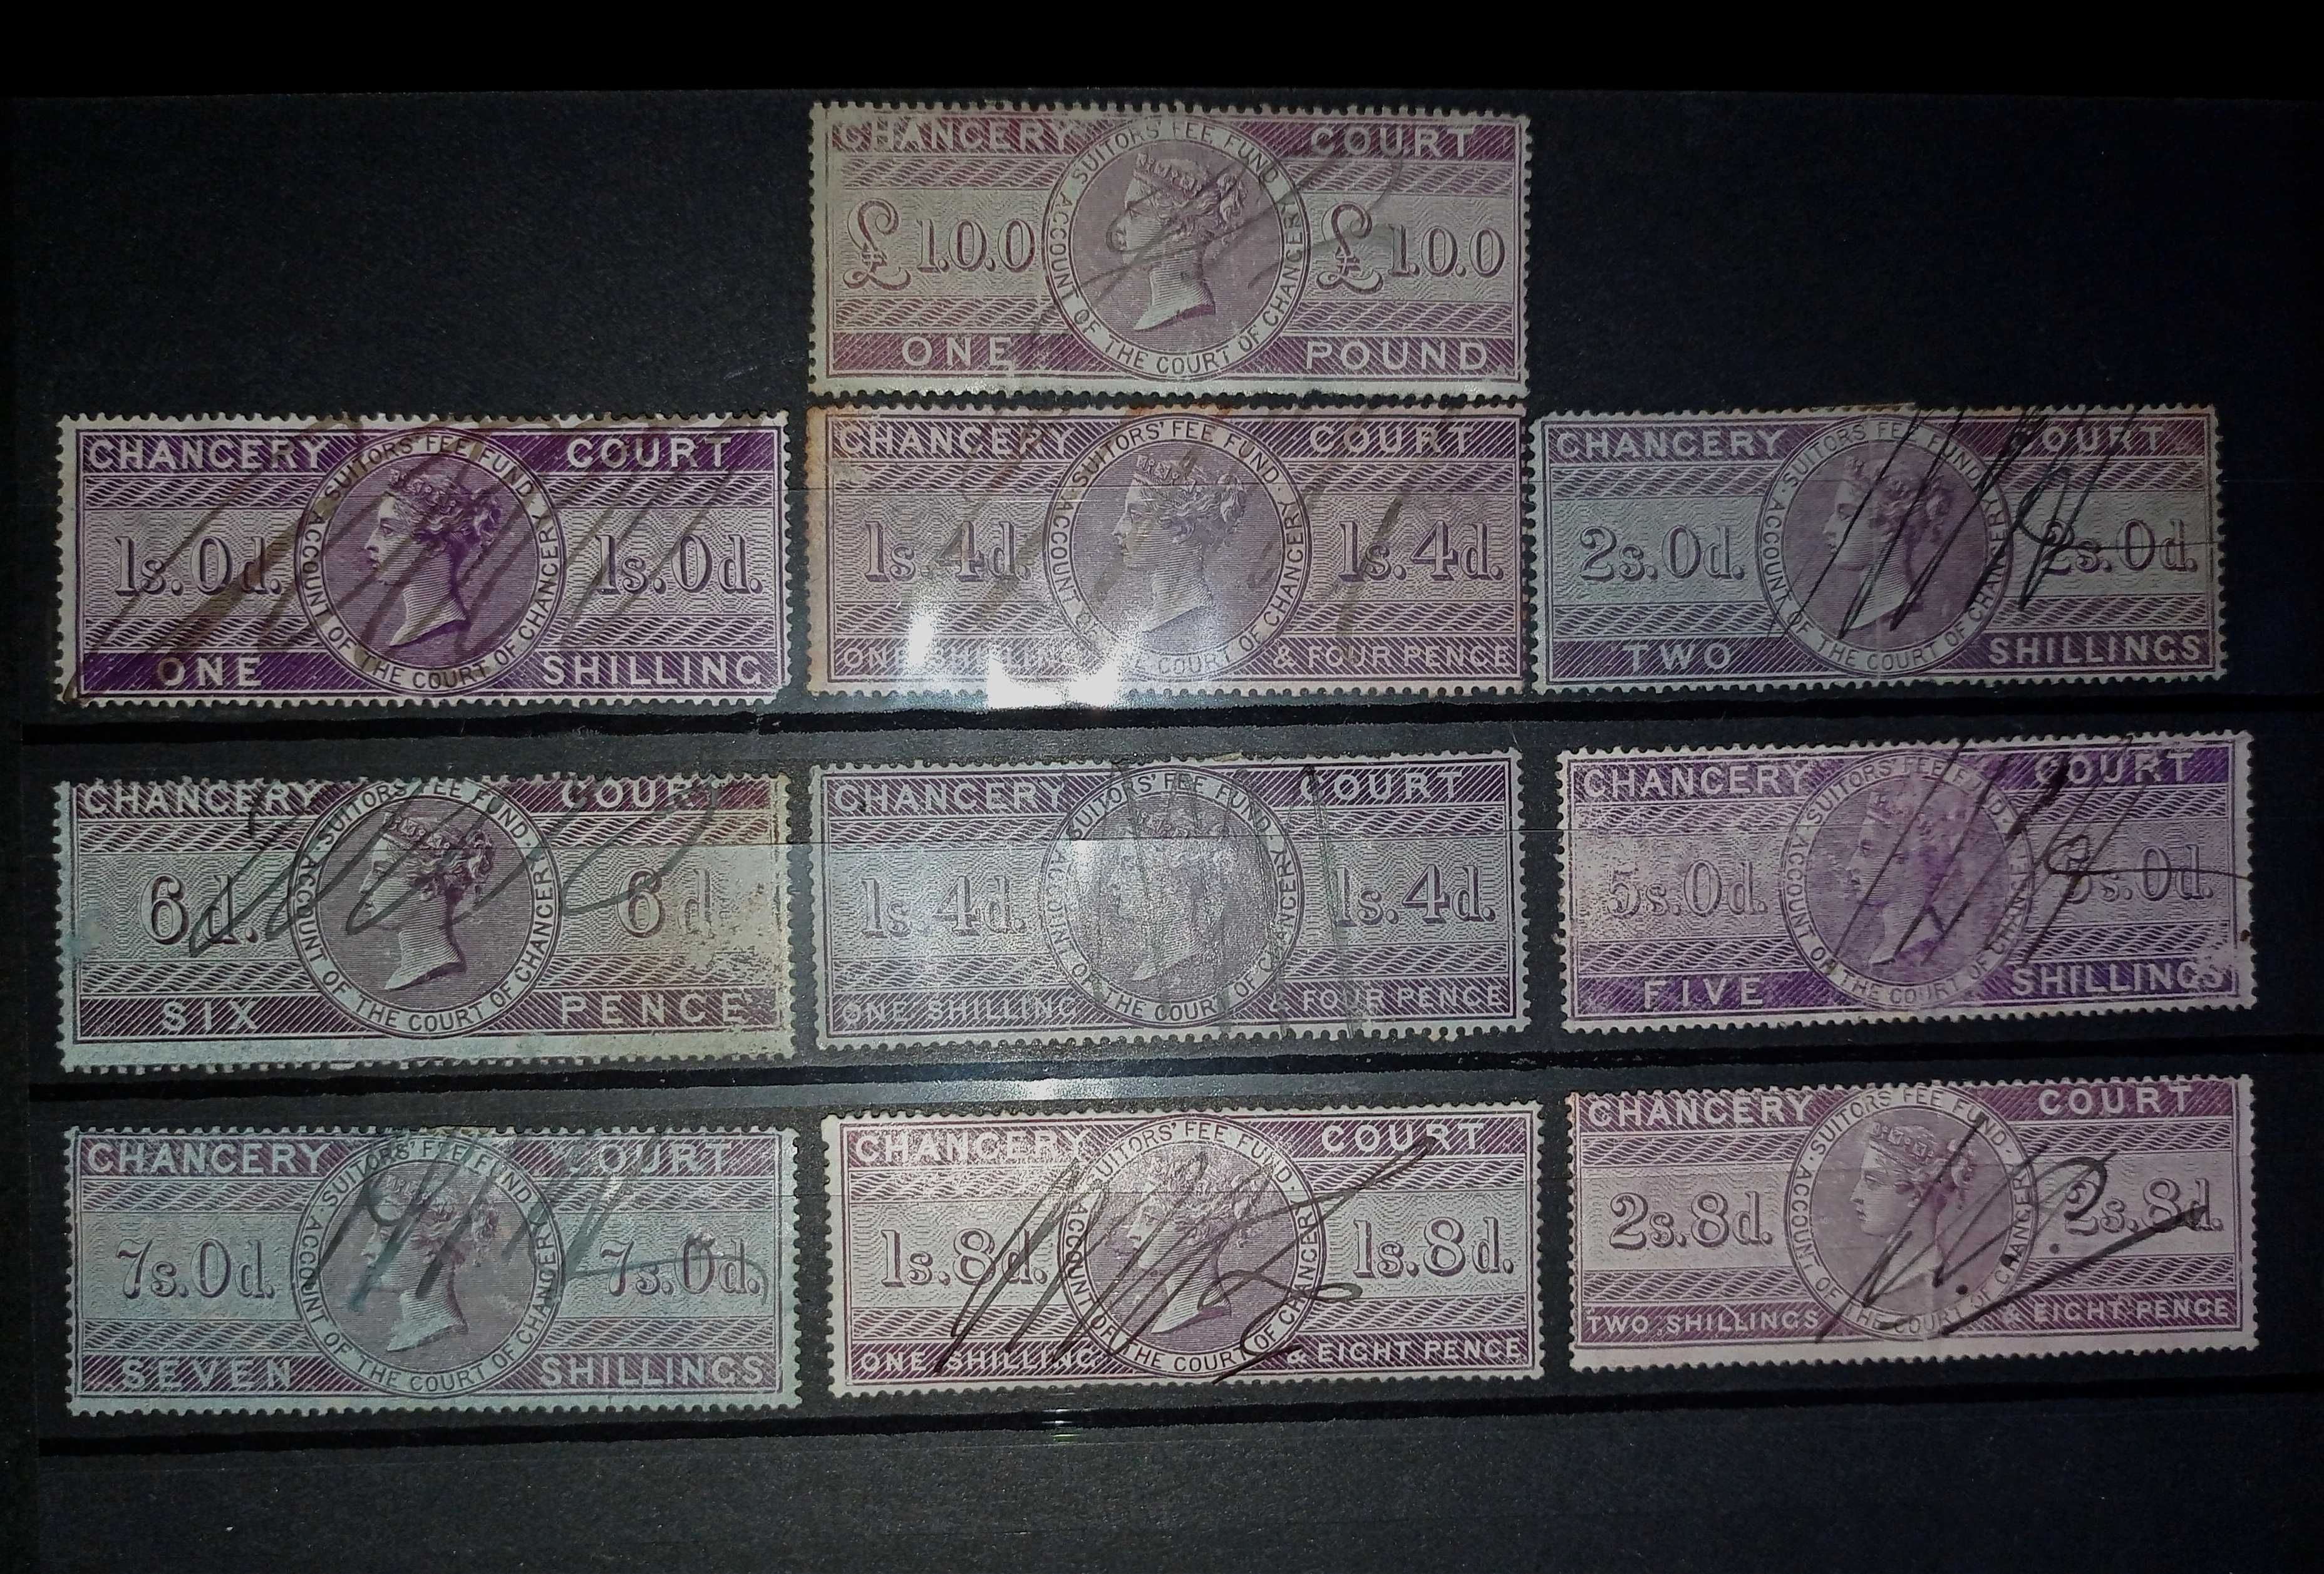 Lot timbre fiscale vechi Anglia de colectie Marea Britanie